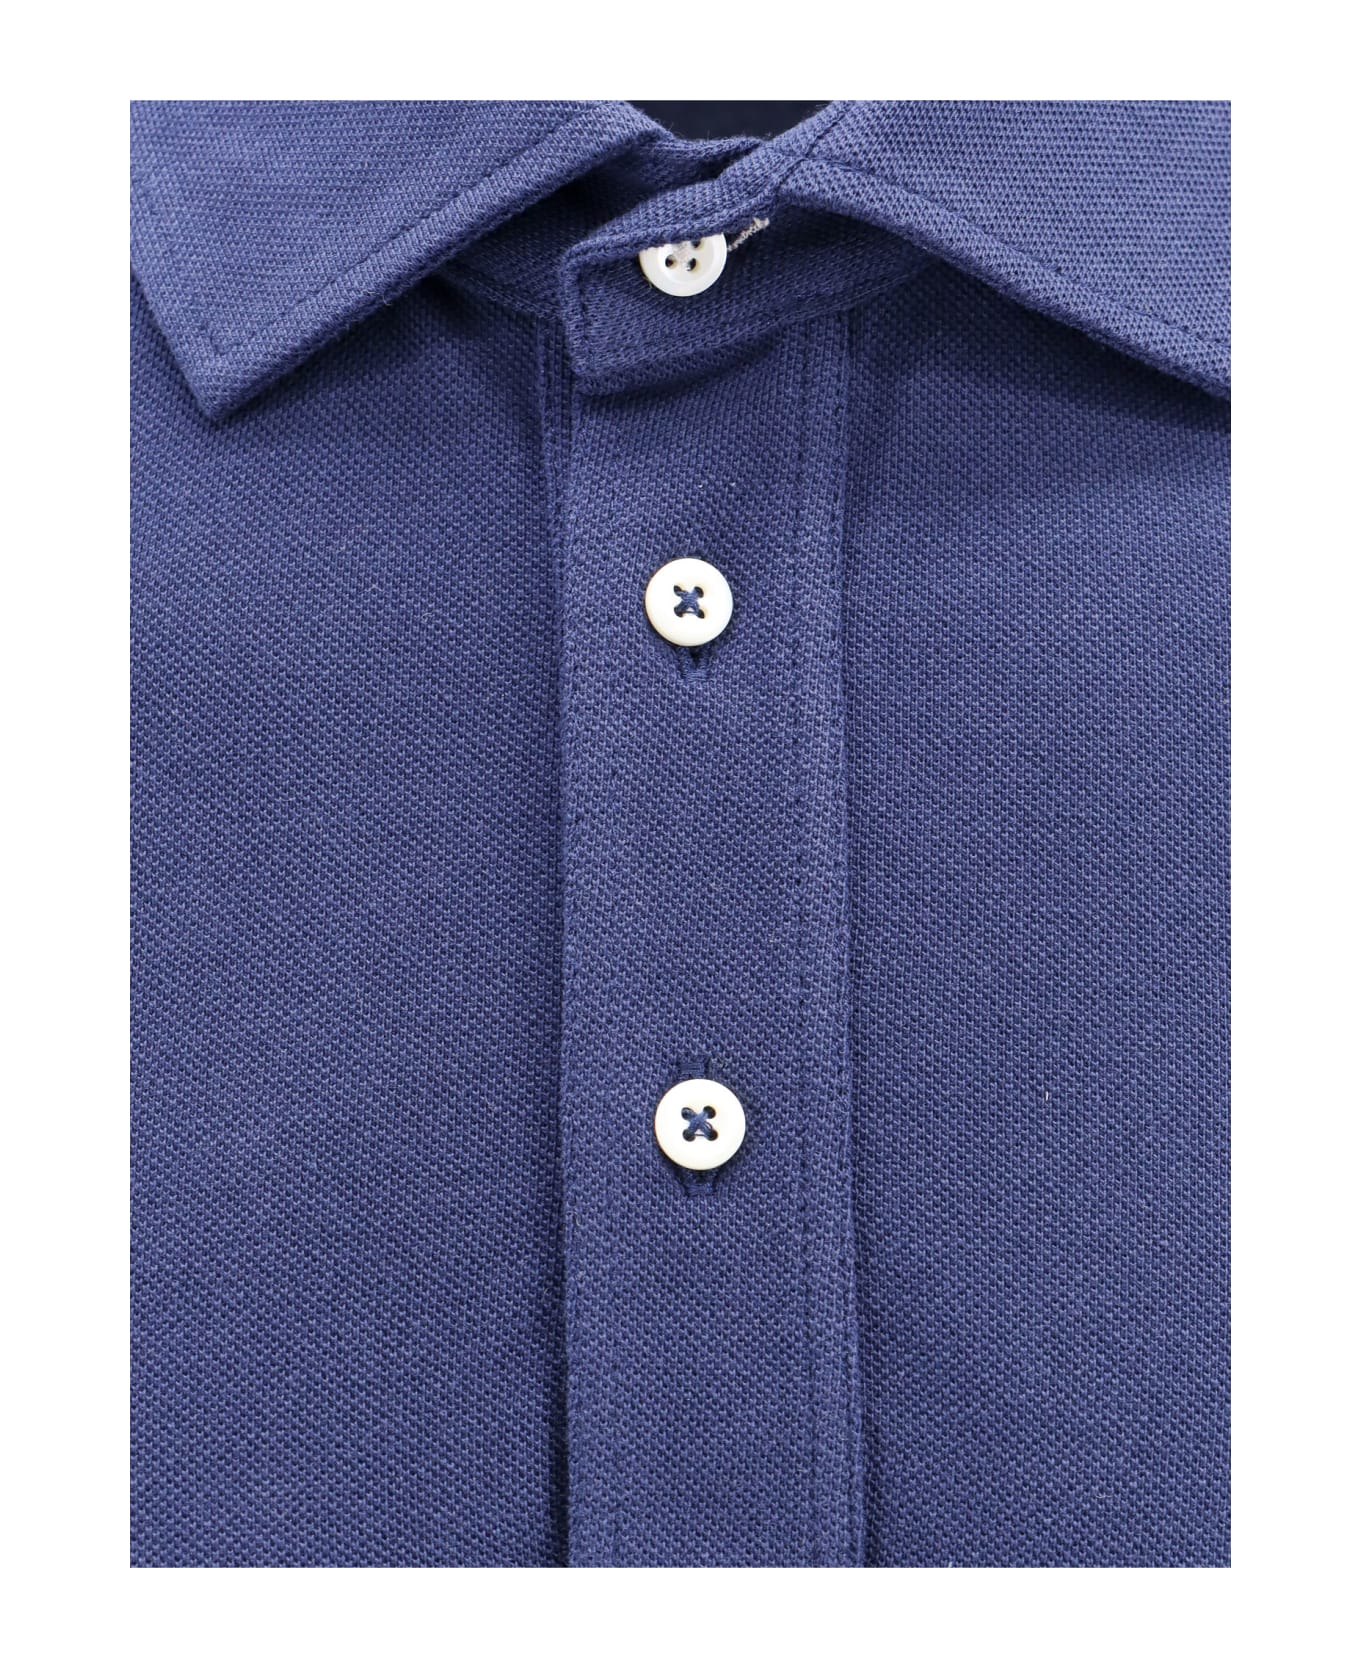 Brunello Cucinelli Polo Shirt - Blue